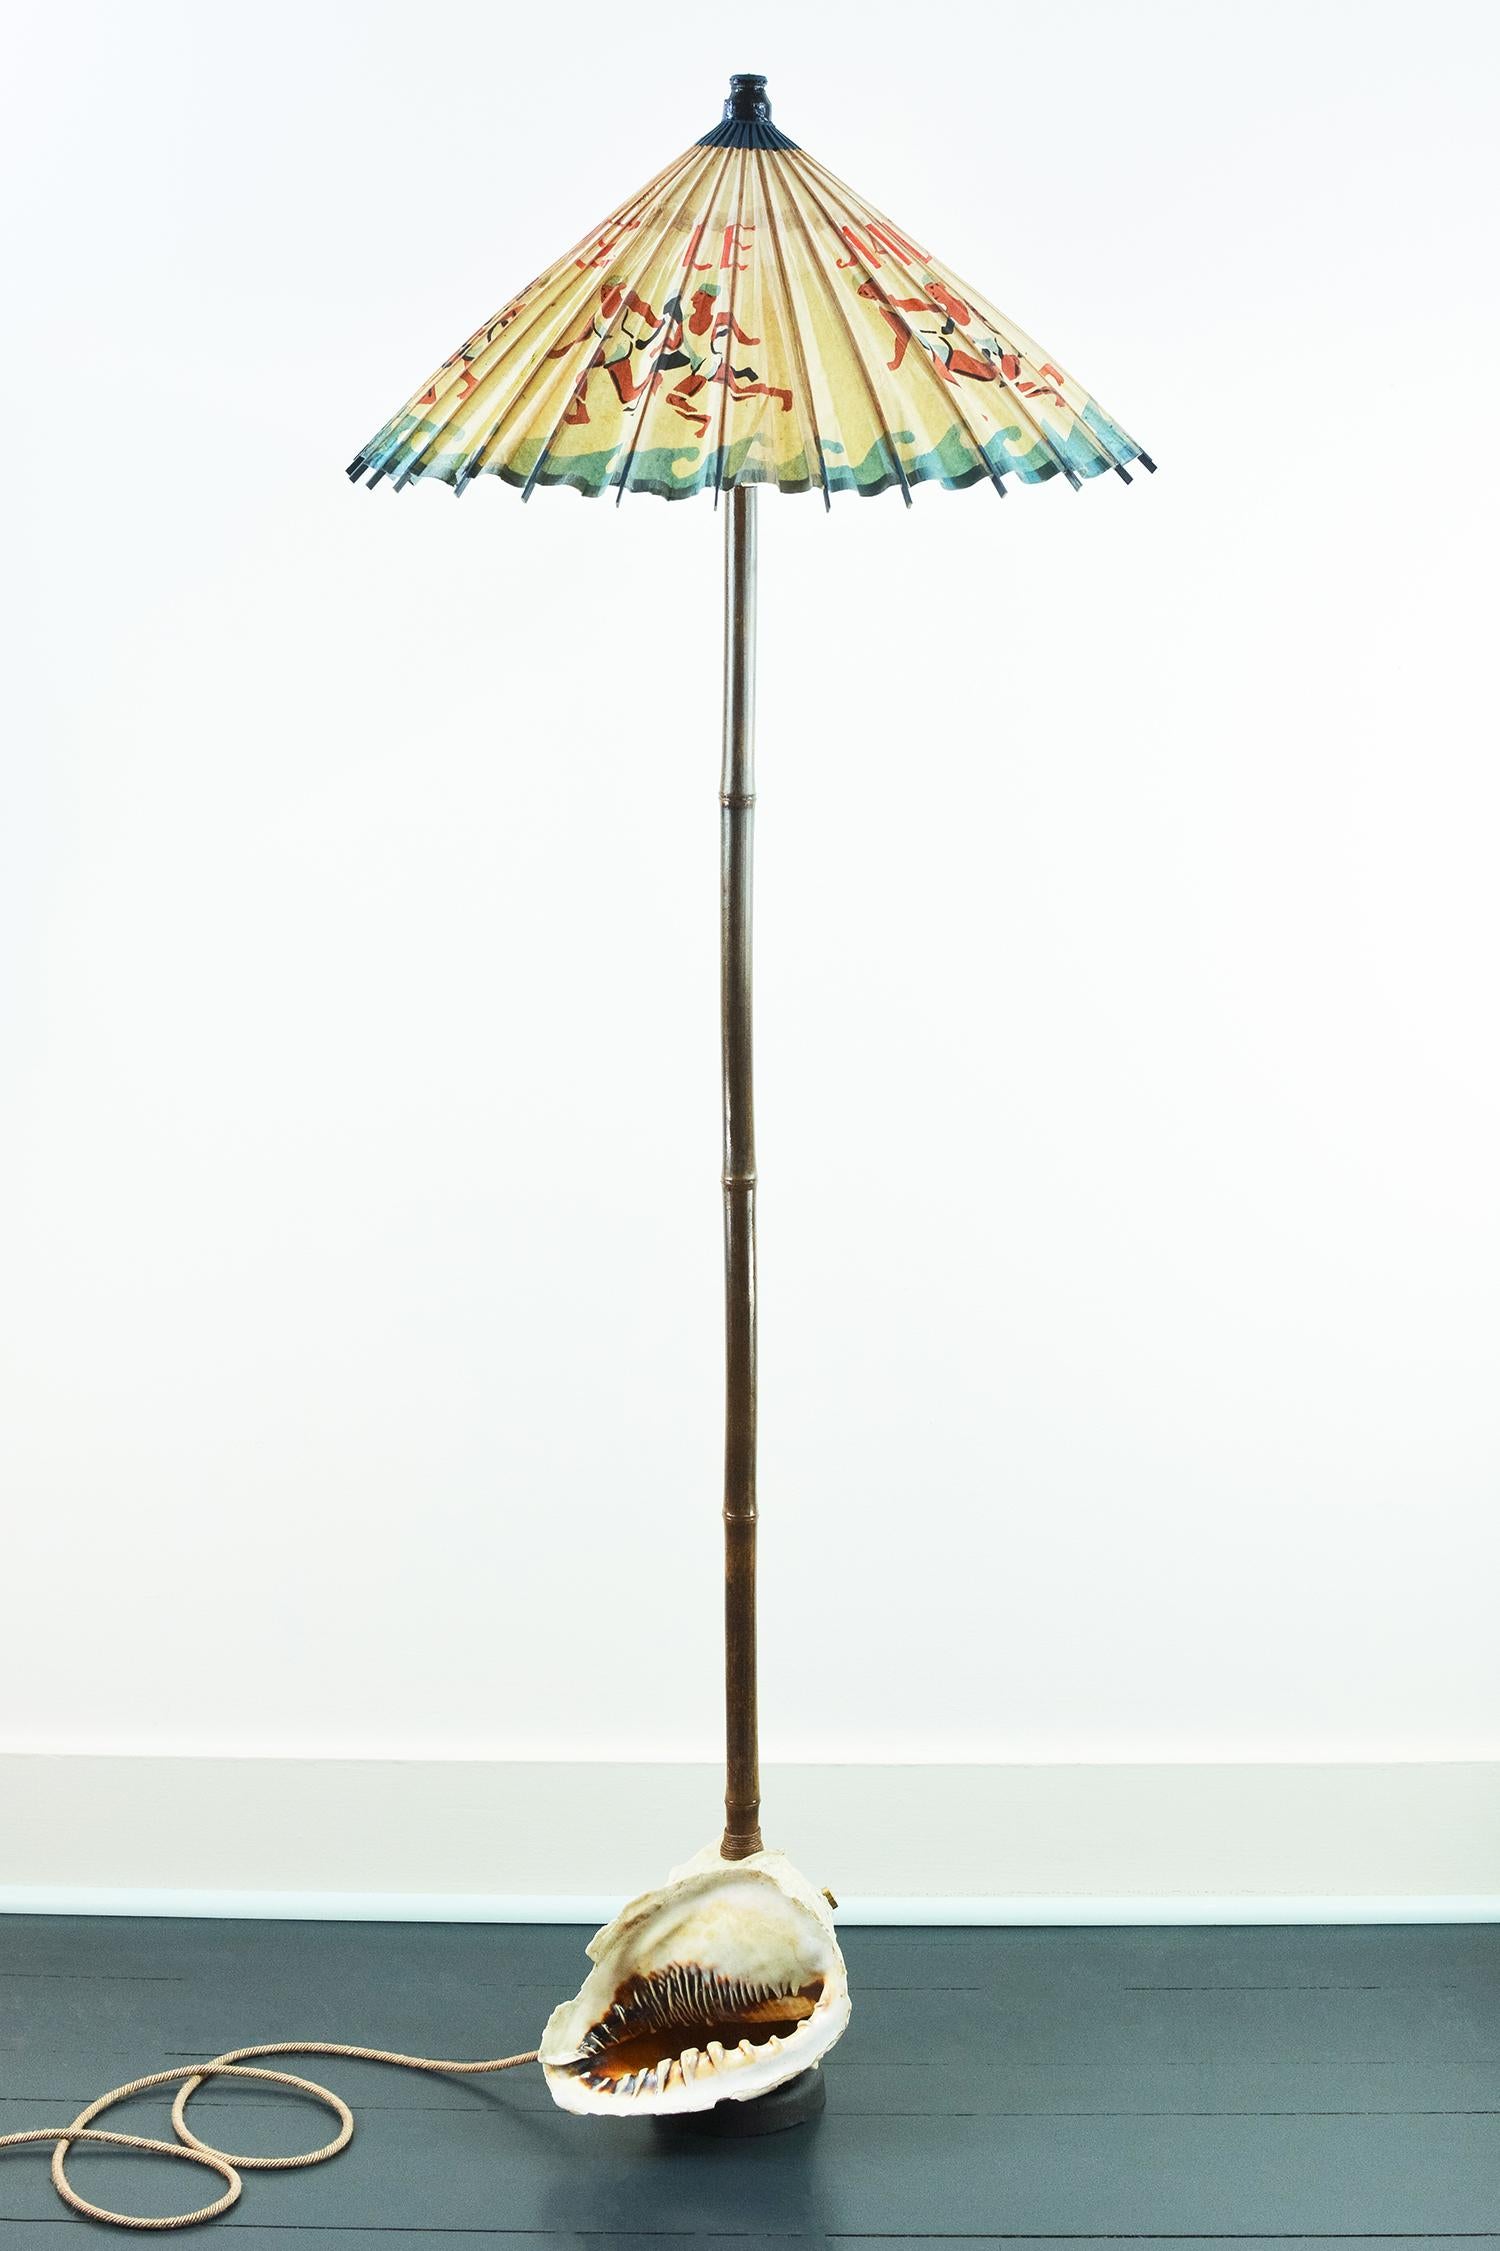 Le modèle n° 014 est une lampe d'art unique en son genre, dotée d'un abat-jour vintage en papier de riz fabriqué à partir d'un très rare parasol français de 1919 faisant la publicité d'une ligne de maillots de bain d'eau froide.

L'abat-jour repose